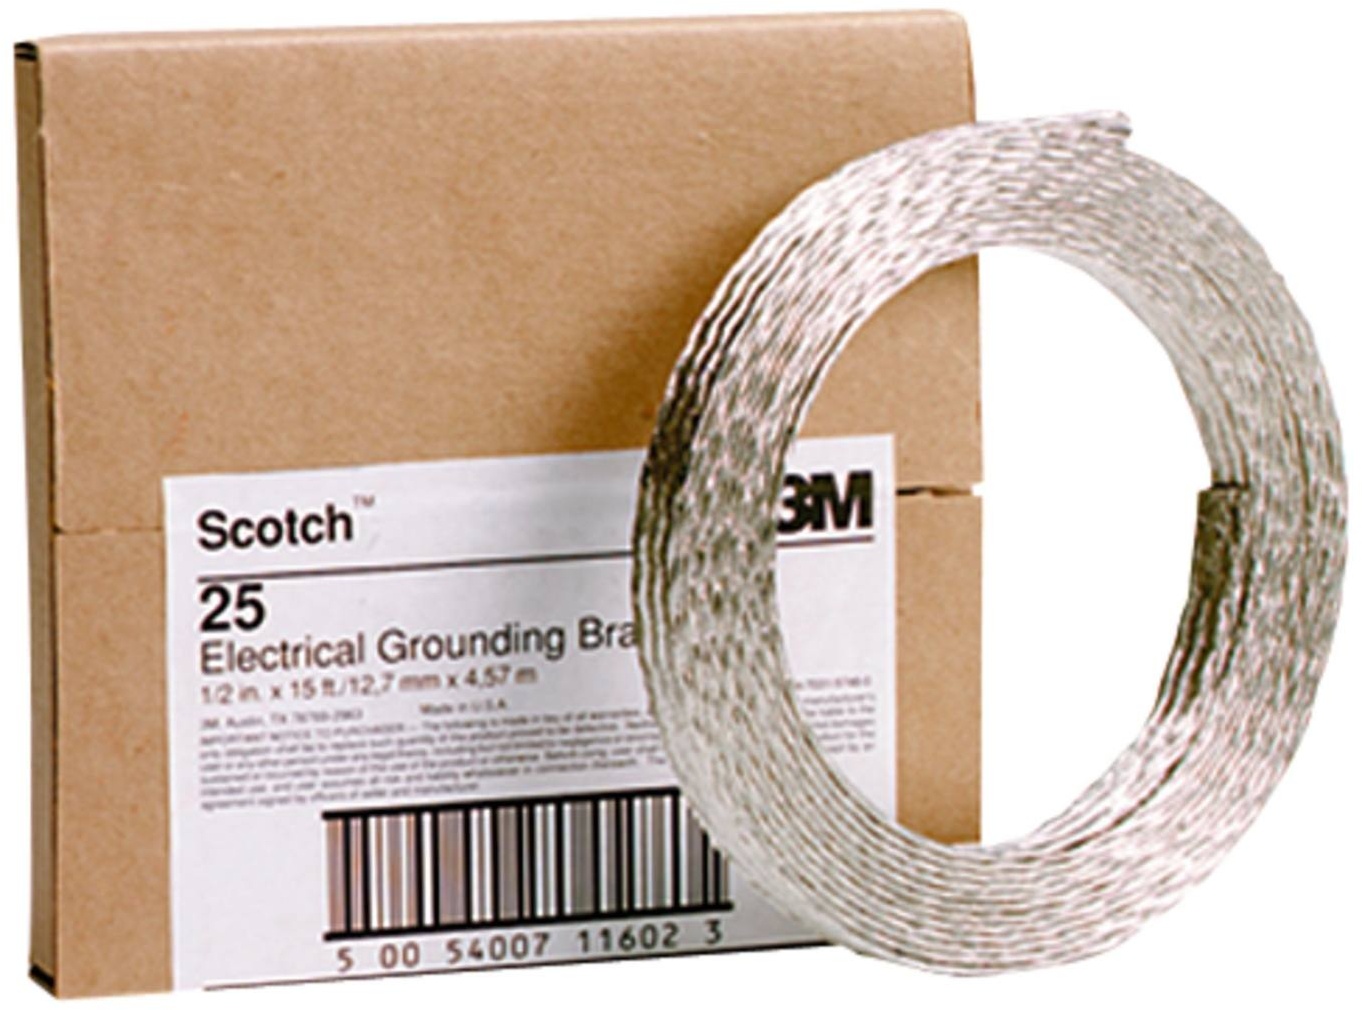 3M Scotch 25 Erdungsband, Kupfer-verzinnt, 25 mm2, 13 mm x 4,5 m, 2,38 mm